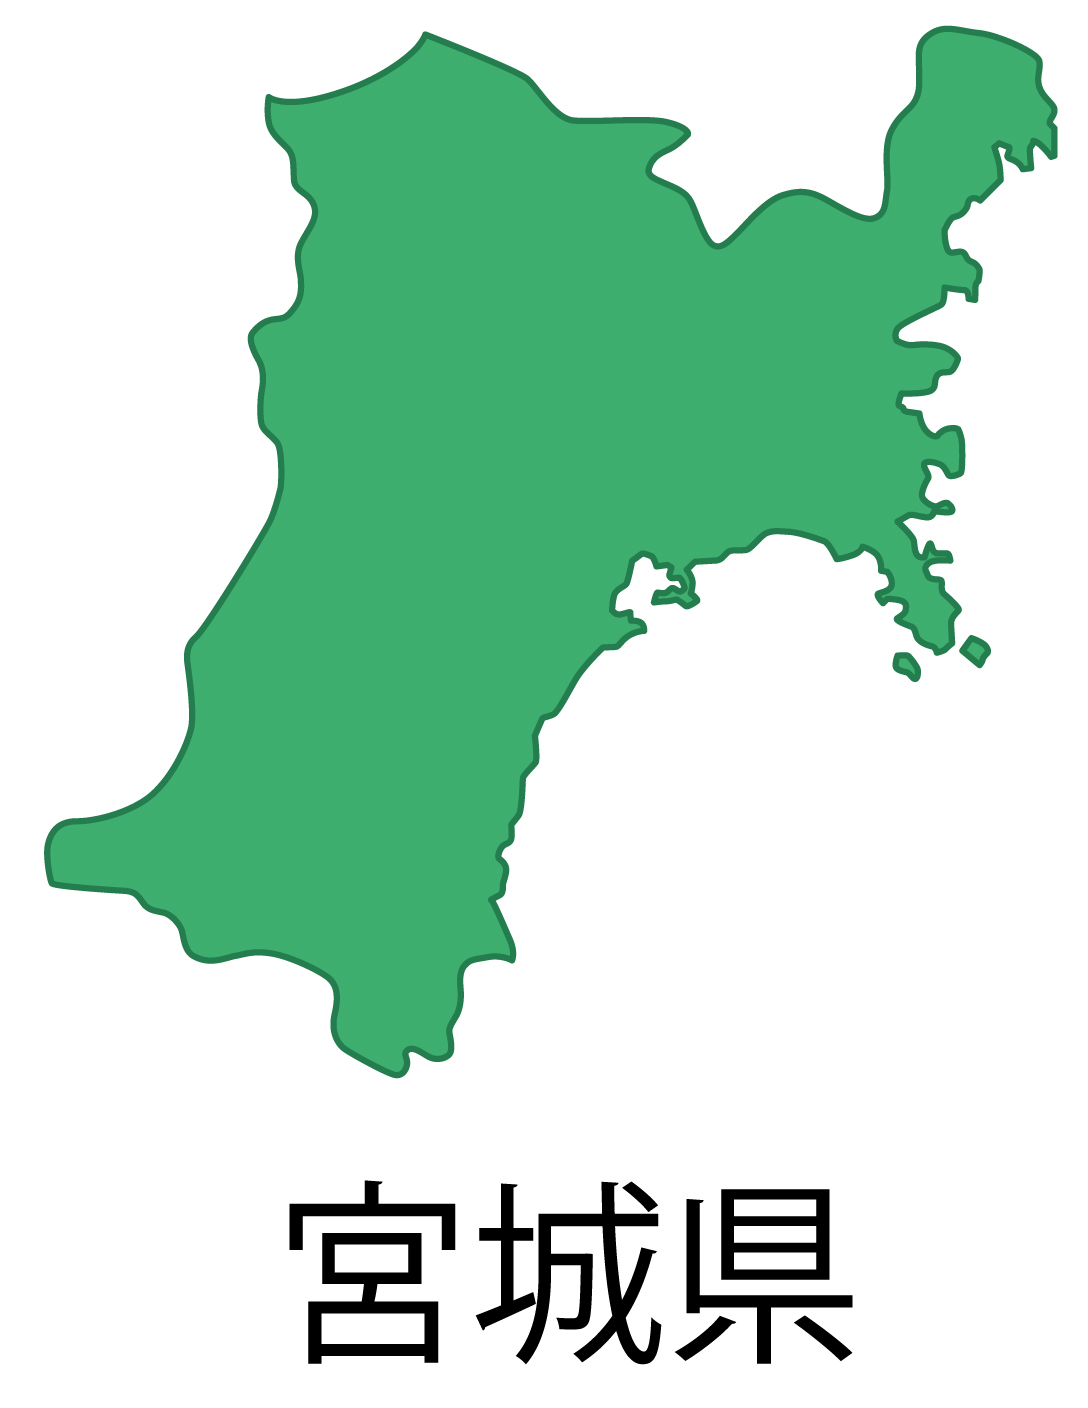 宮城県の地図イラスト フリー素材 を無料ダウンロード